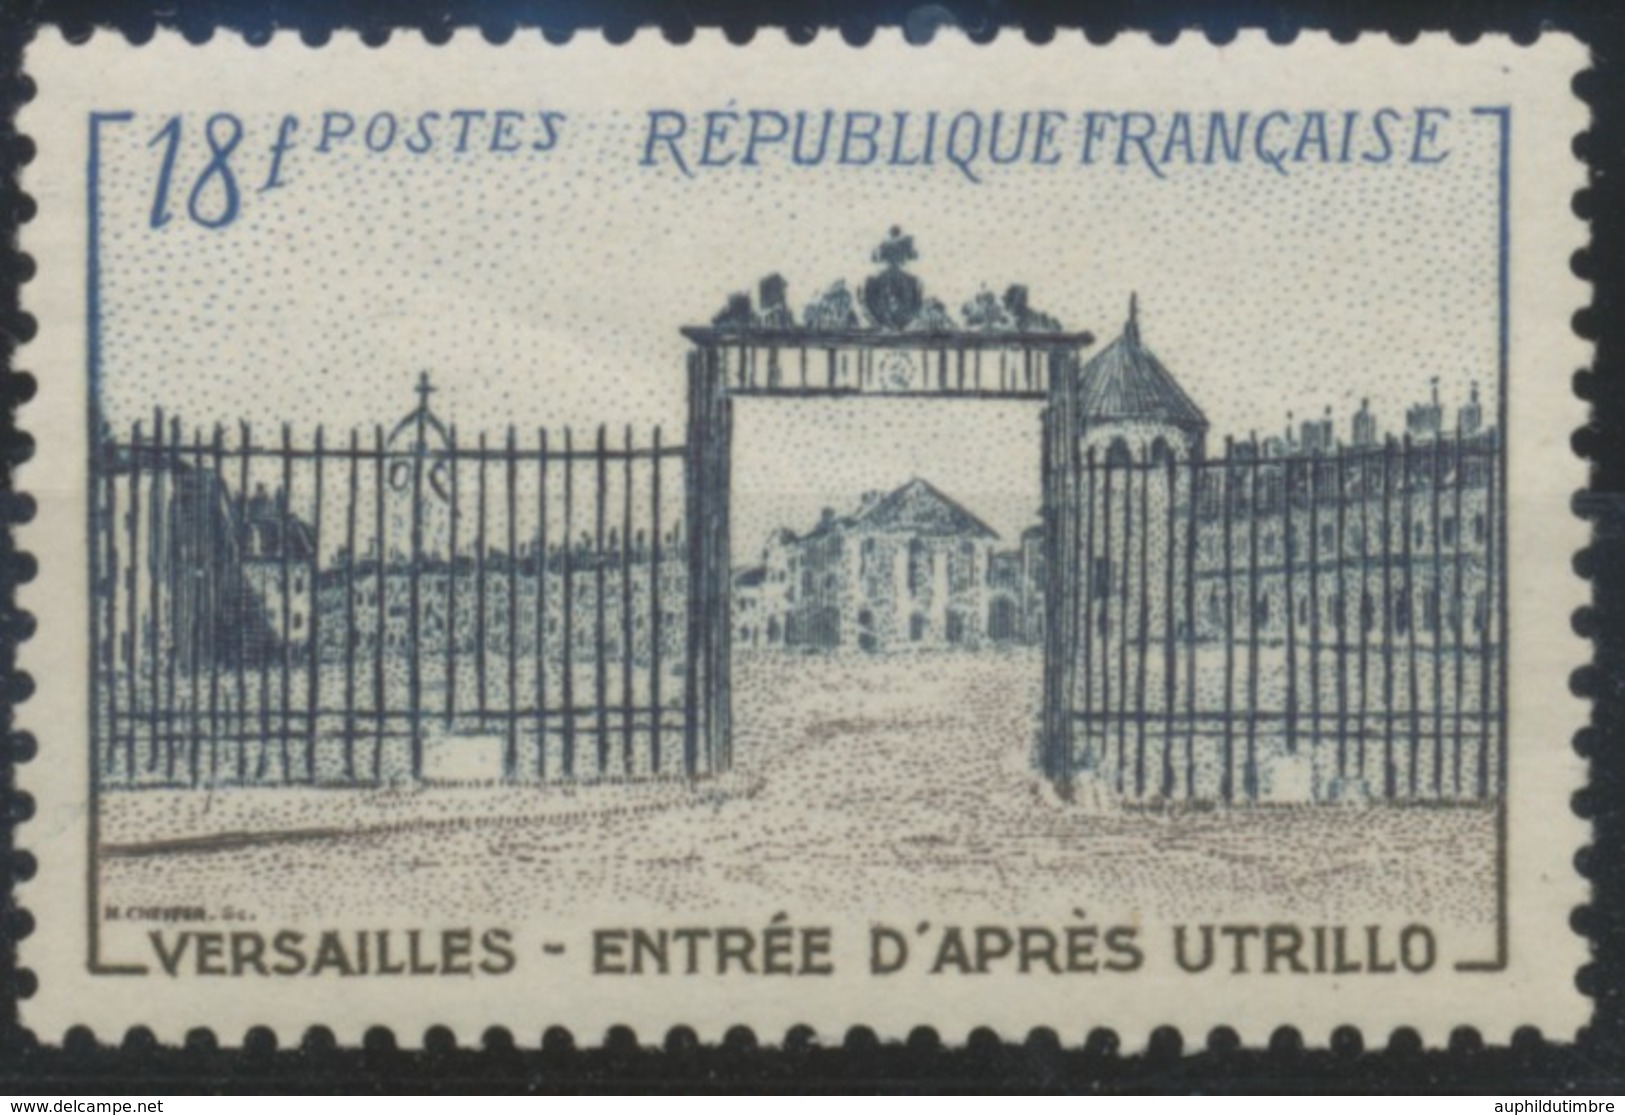 Grille D'entrée Du Château De Versailles. Type De 1952 (no 939) 18f. Brun-lilas, Bleu-noir Et Bleu. Neuf Luxe ** Y988 - Nuovi